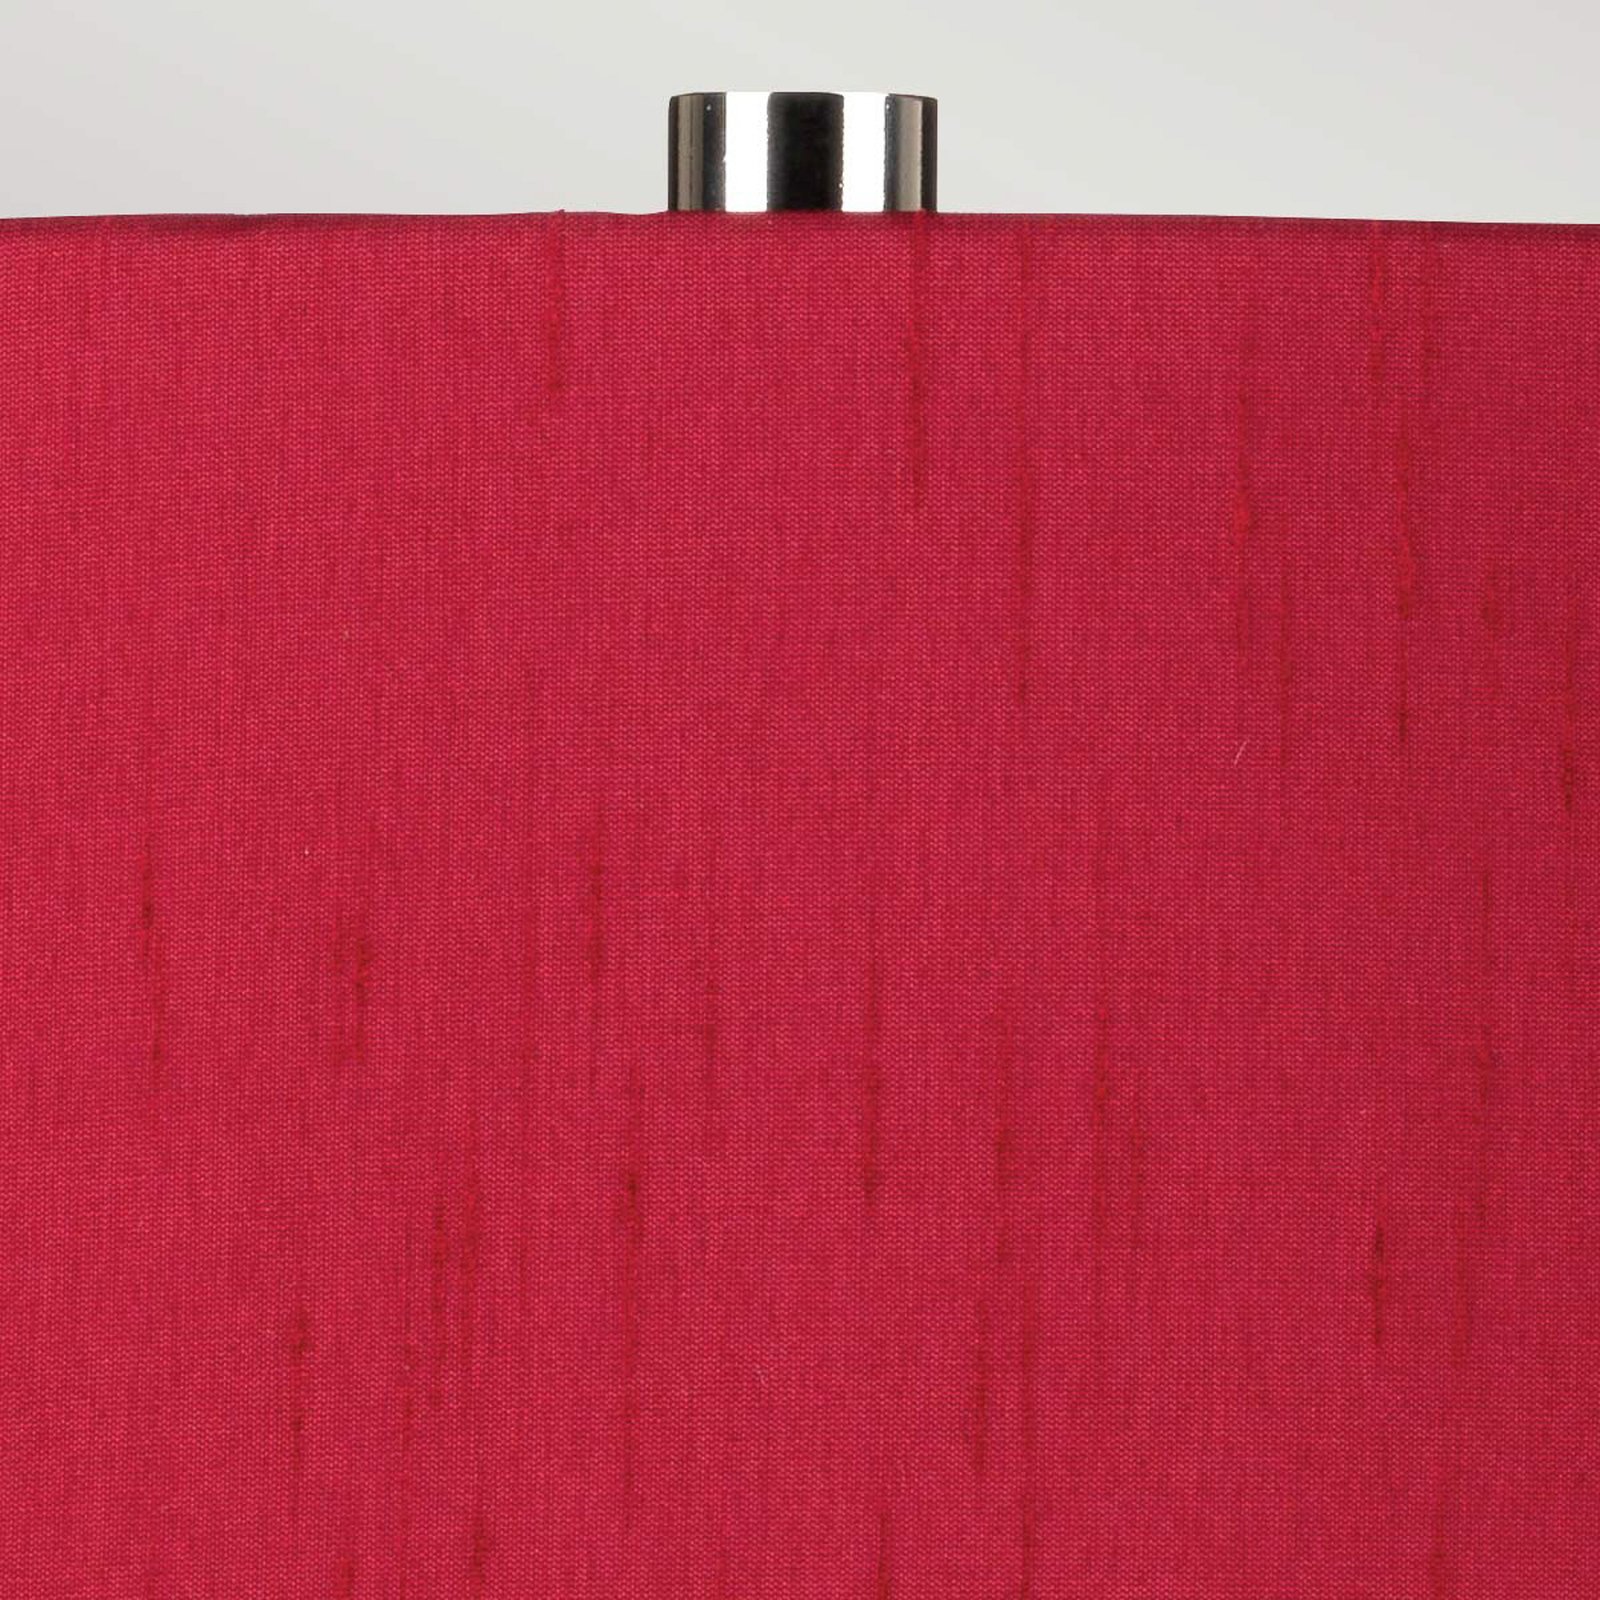 Textiel-tafellamp Isla nikkel gepolijst/rood